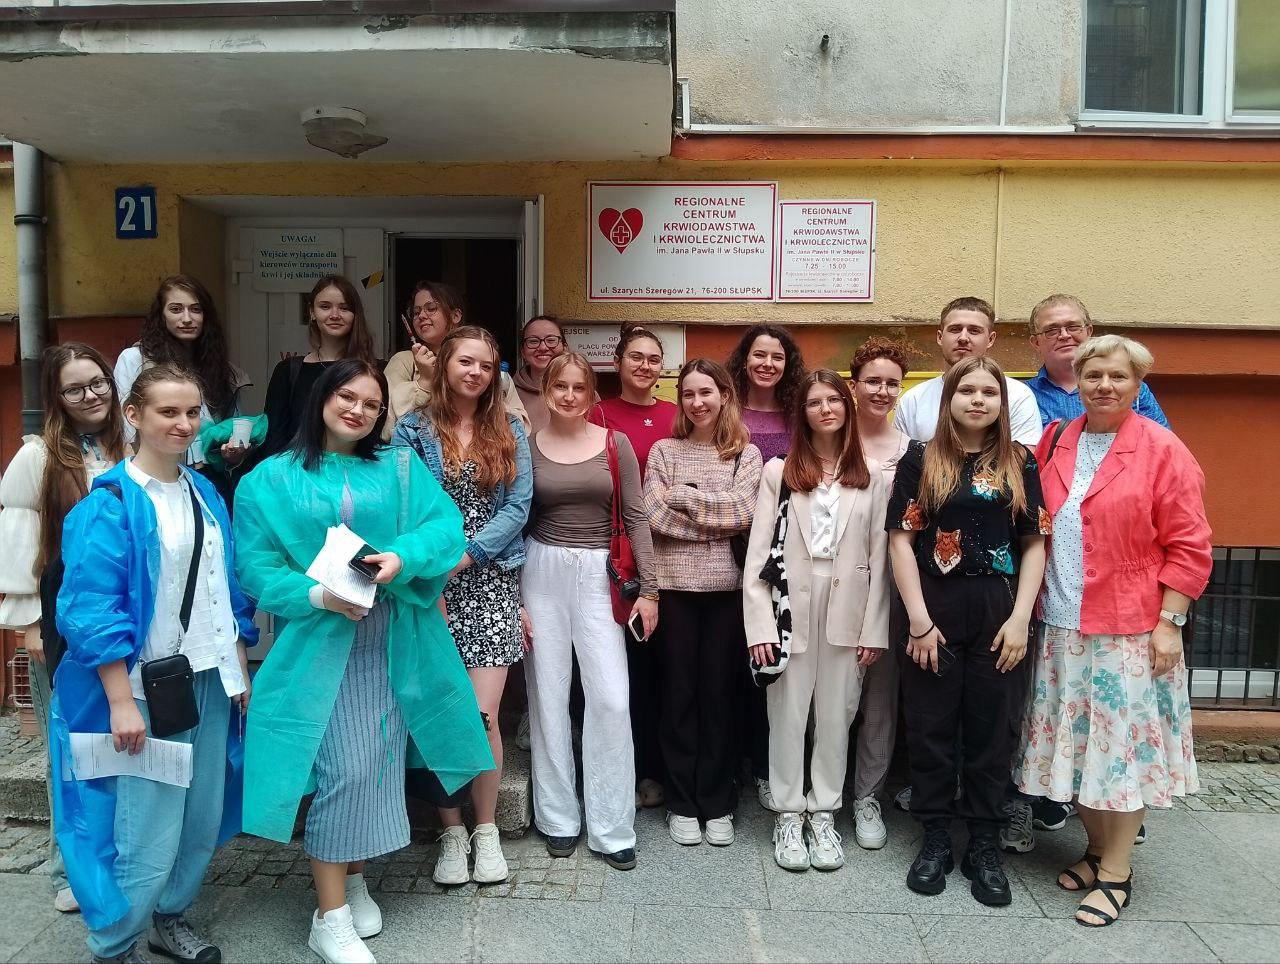 Wizyta studentów w Regionalnym Centrum Krwiodawstwa i Krwiolecznictwa im. Jana Pawła II w Słupsku w ramach Dnia Nauki i Sportu